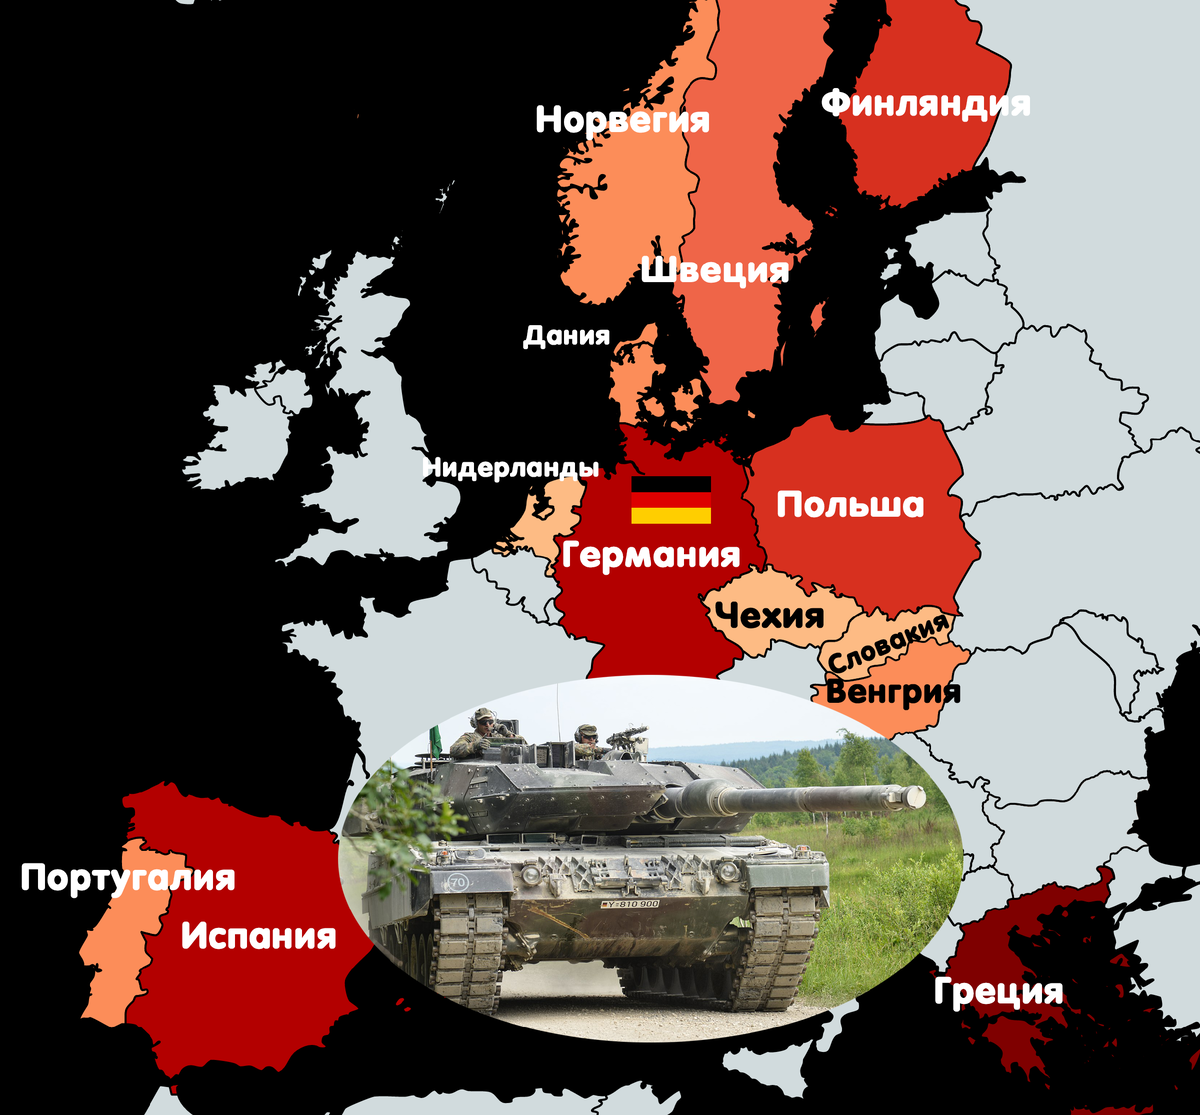 Количество танков в мире. Количество танков по странам. Количество танков в Европе. Количество танков Leopard по странам. Сколько танков у стран Европы.